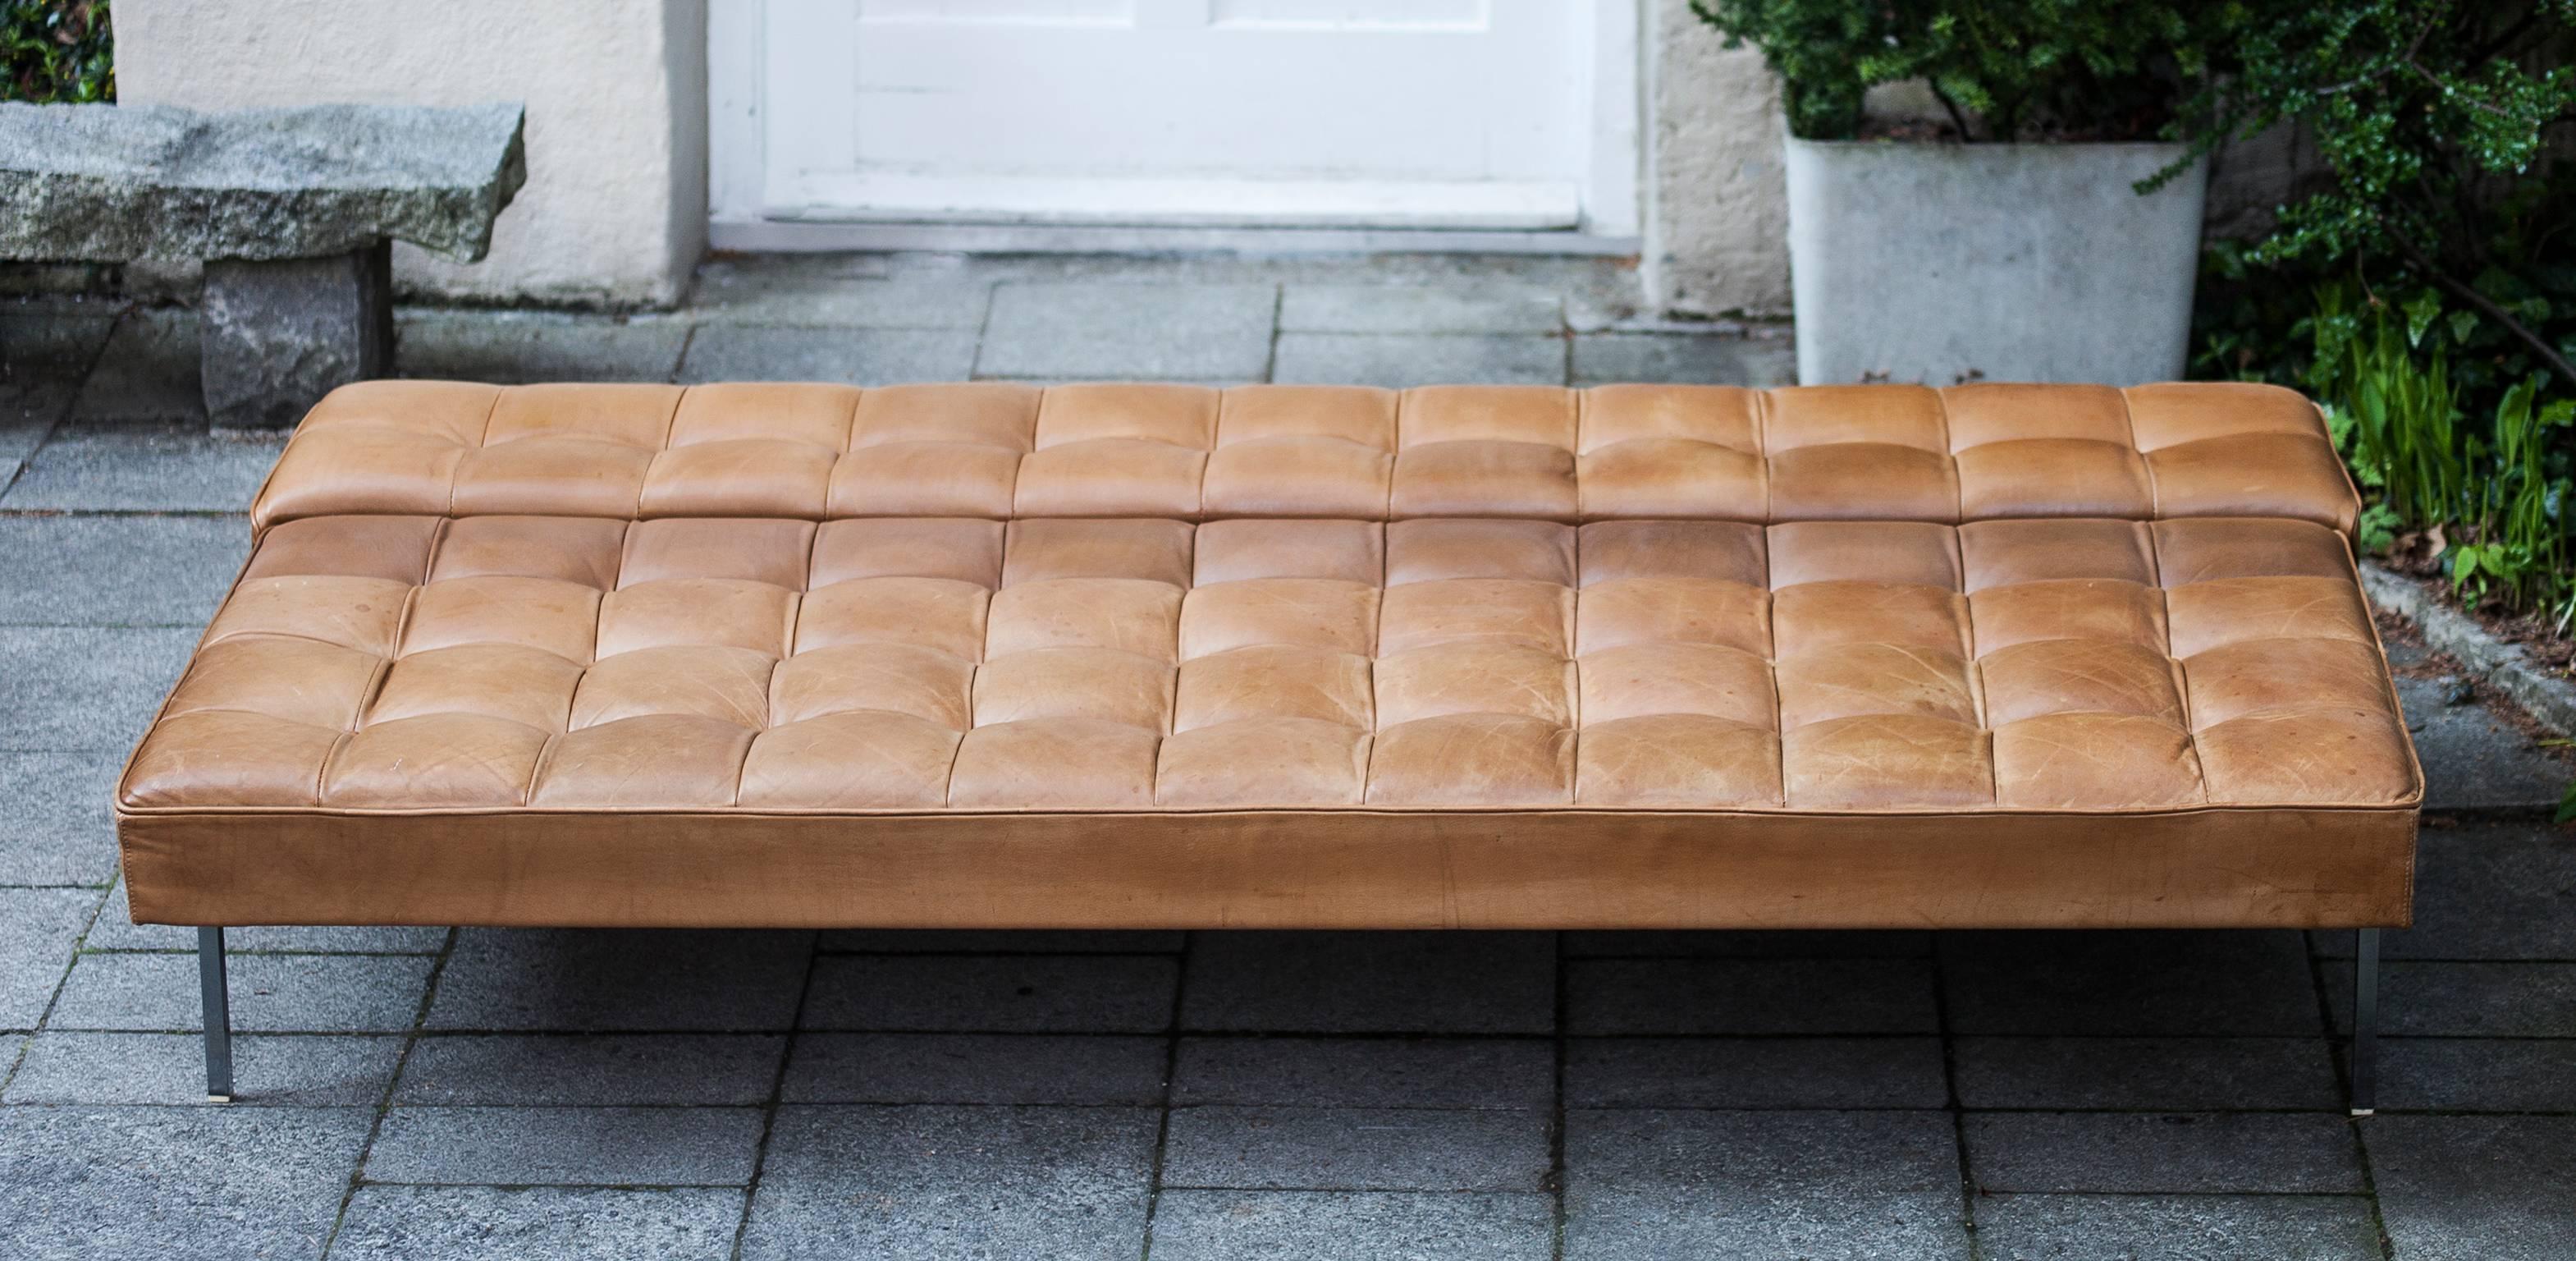 Fantastisches Sofa von Johannes Spalt, hergestellt von Wittmann, Österreich, 1961. Dieses seltene frühe Modell mit dem Namen 'Constanze in originalem Nature-Leder, das sich in ein Tagesbett verwandelt, basiert auf einem Metallrahmen und ist in sehr